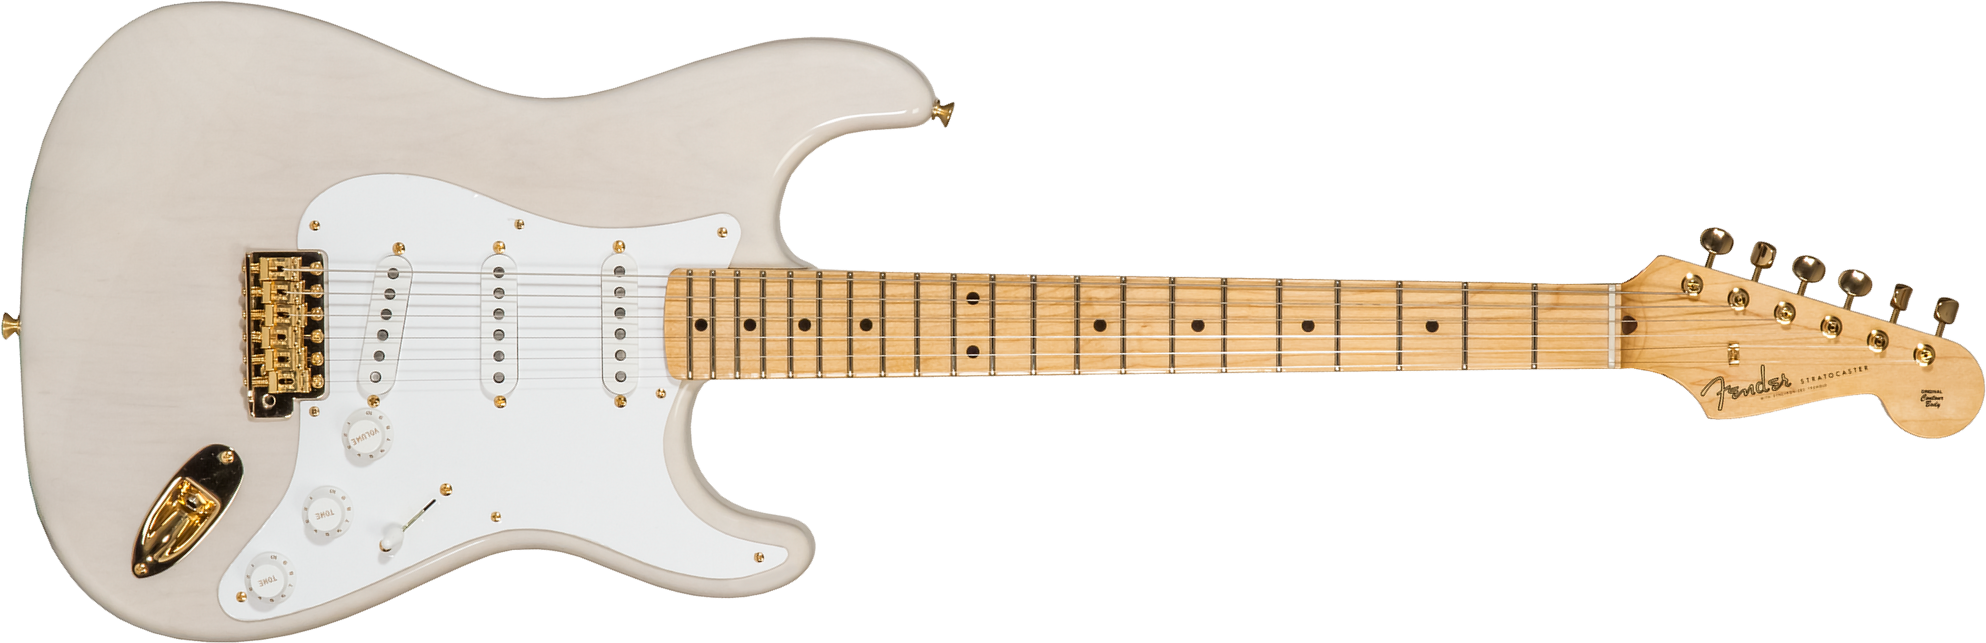 Fender Custom Shop Strat 1957 3s Trem Mn #r125475 - Nos White Blonde - Guitare Électrique Forme Str - Main picture